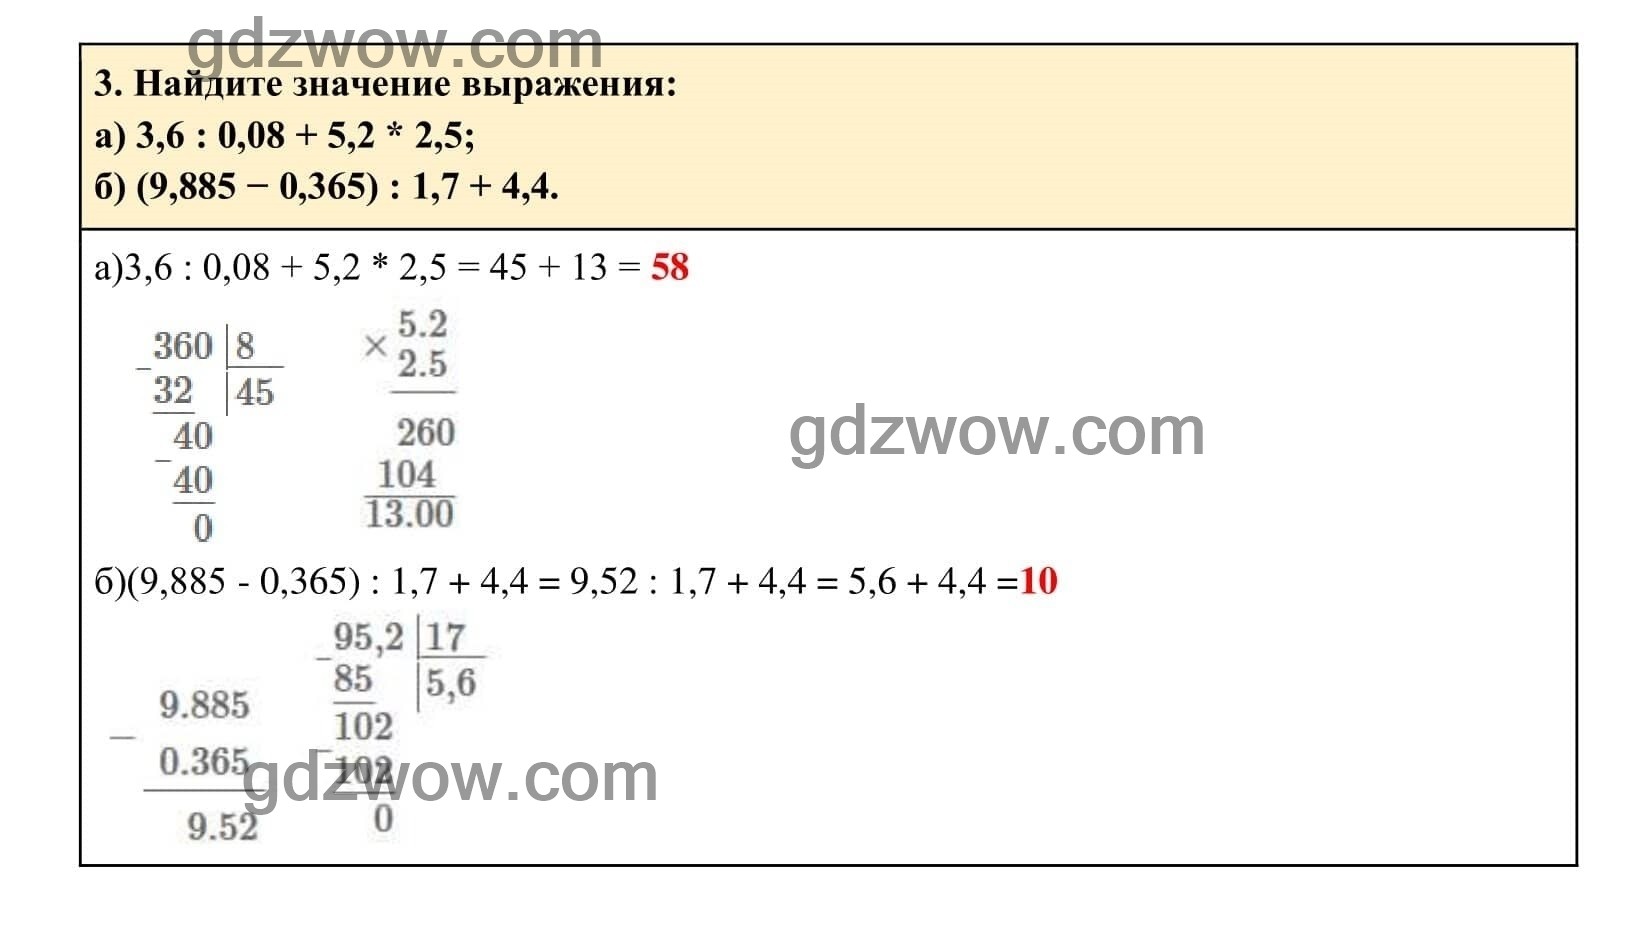 Упражнение 3 - ГДЗ по Алгебре 7 класс Учебник Макарычев (решебник) - GDZwow